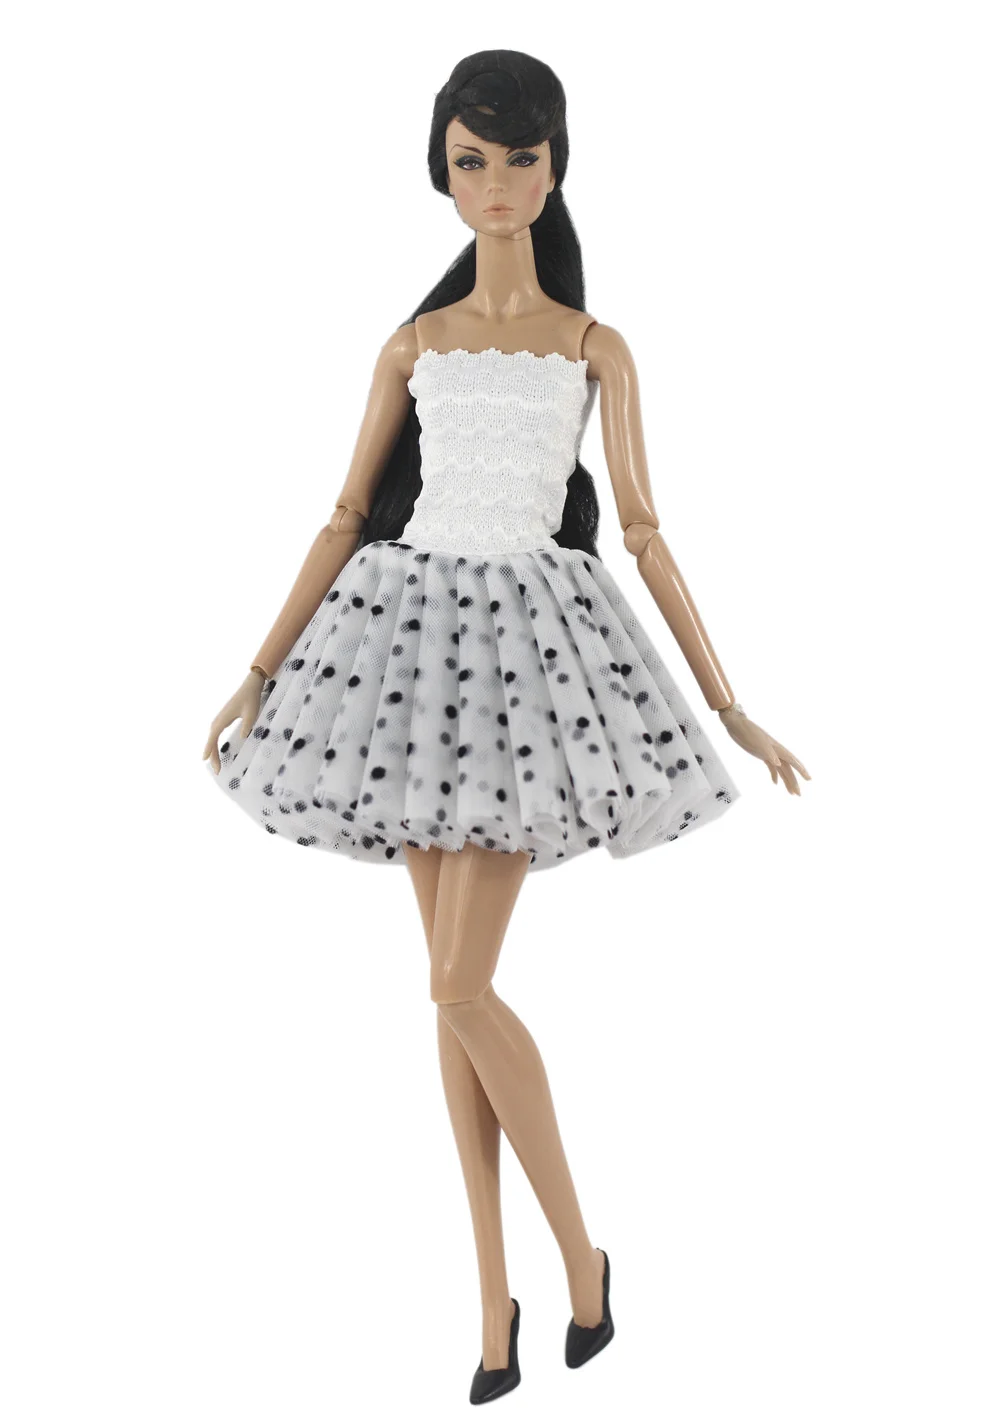 Одежда BABI ручной работы, балетное платье для кукольной одежды 11,5 дюймов 30 см, множество стильных подарков для кукольных аксессуаров BABI 03